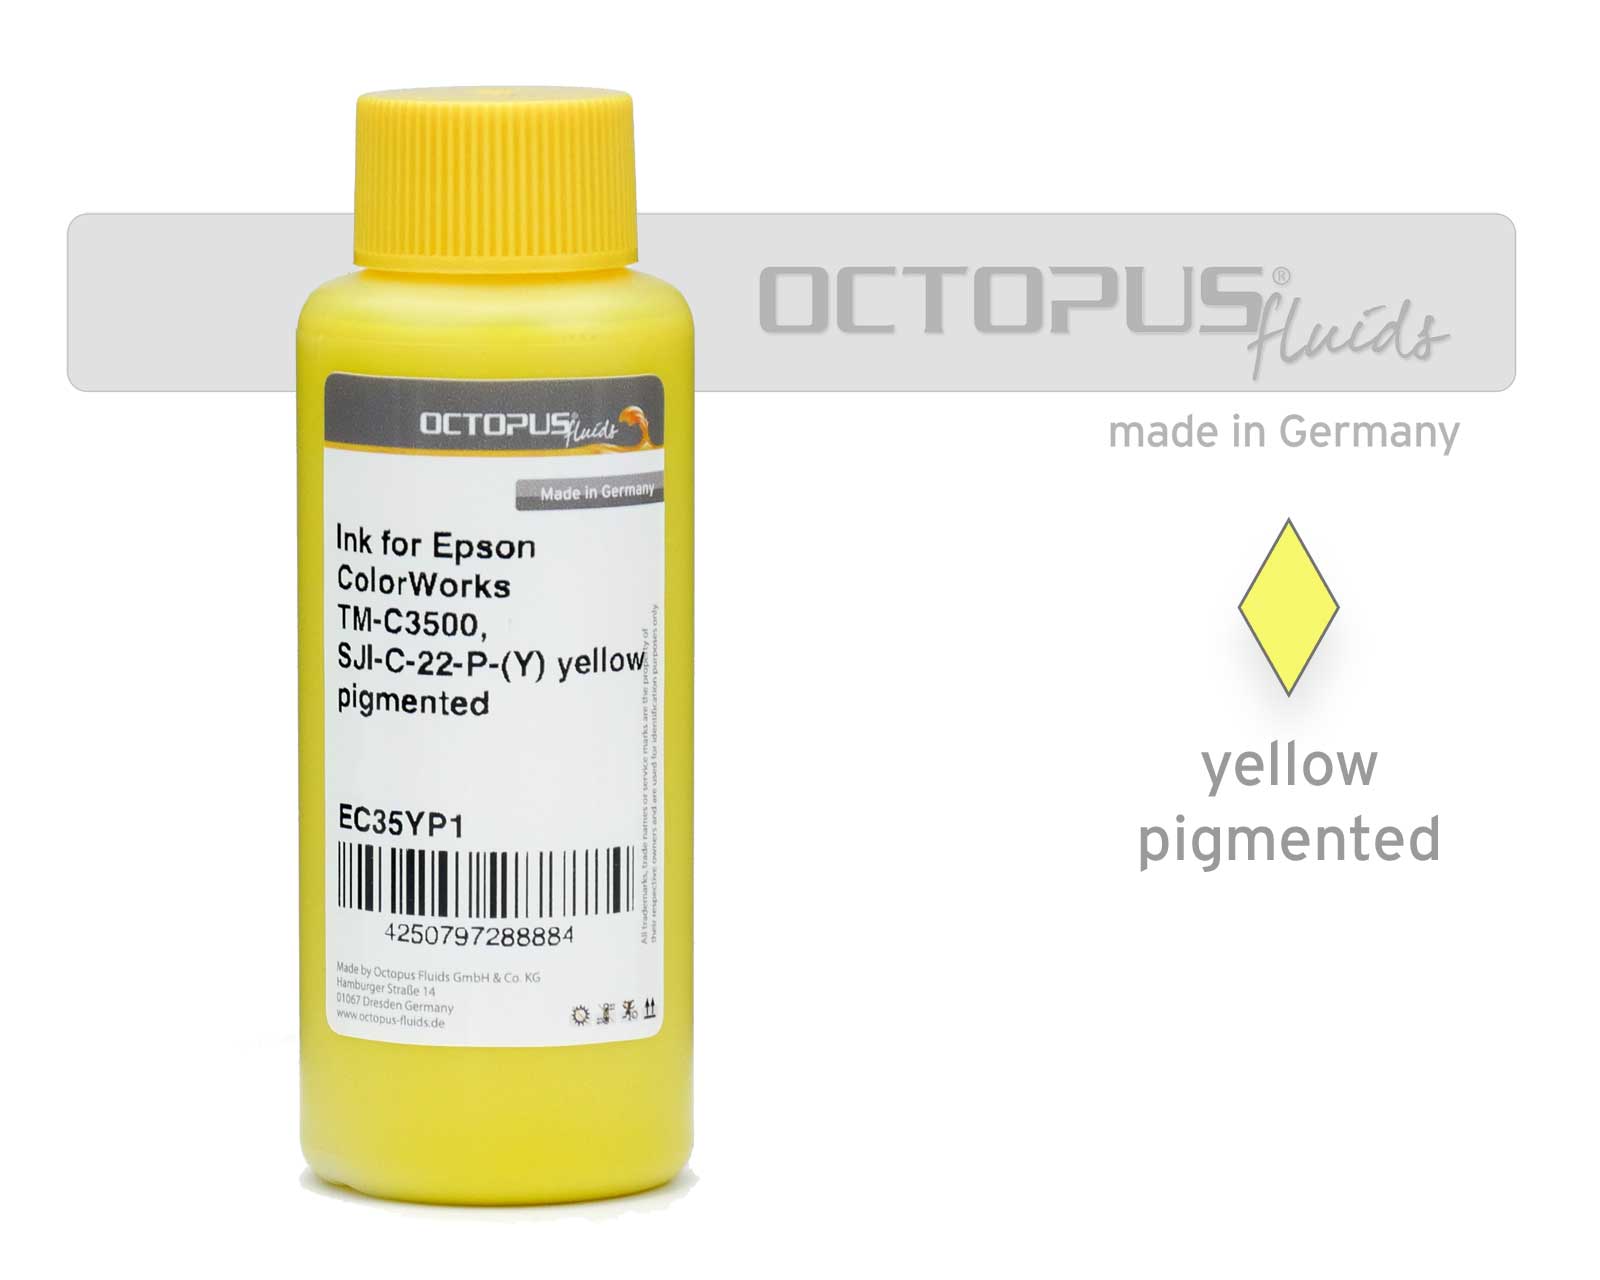 Druckertinte für Epson ColorWorks TM-C3500, SJI-C-22-P-(Y) gelb